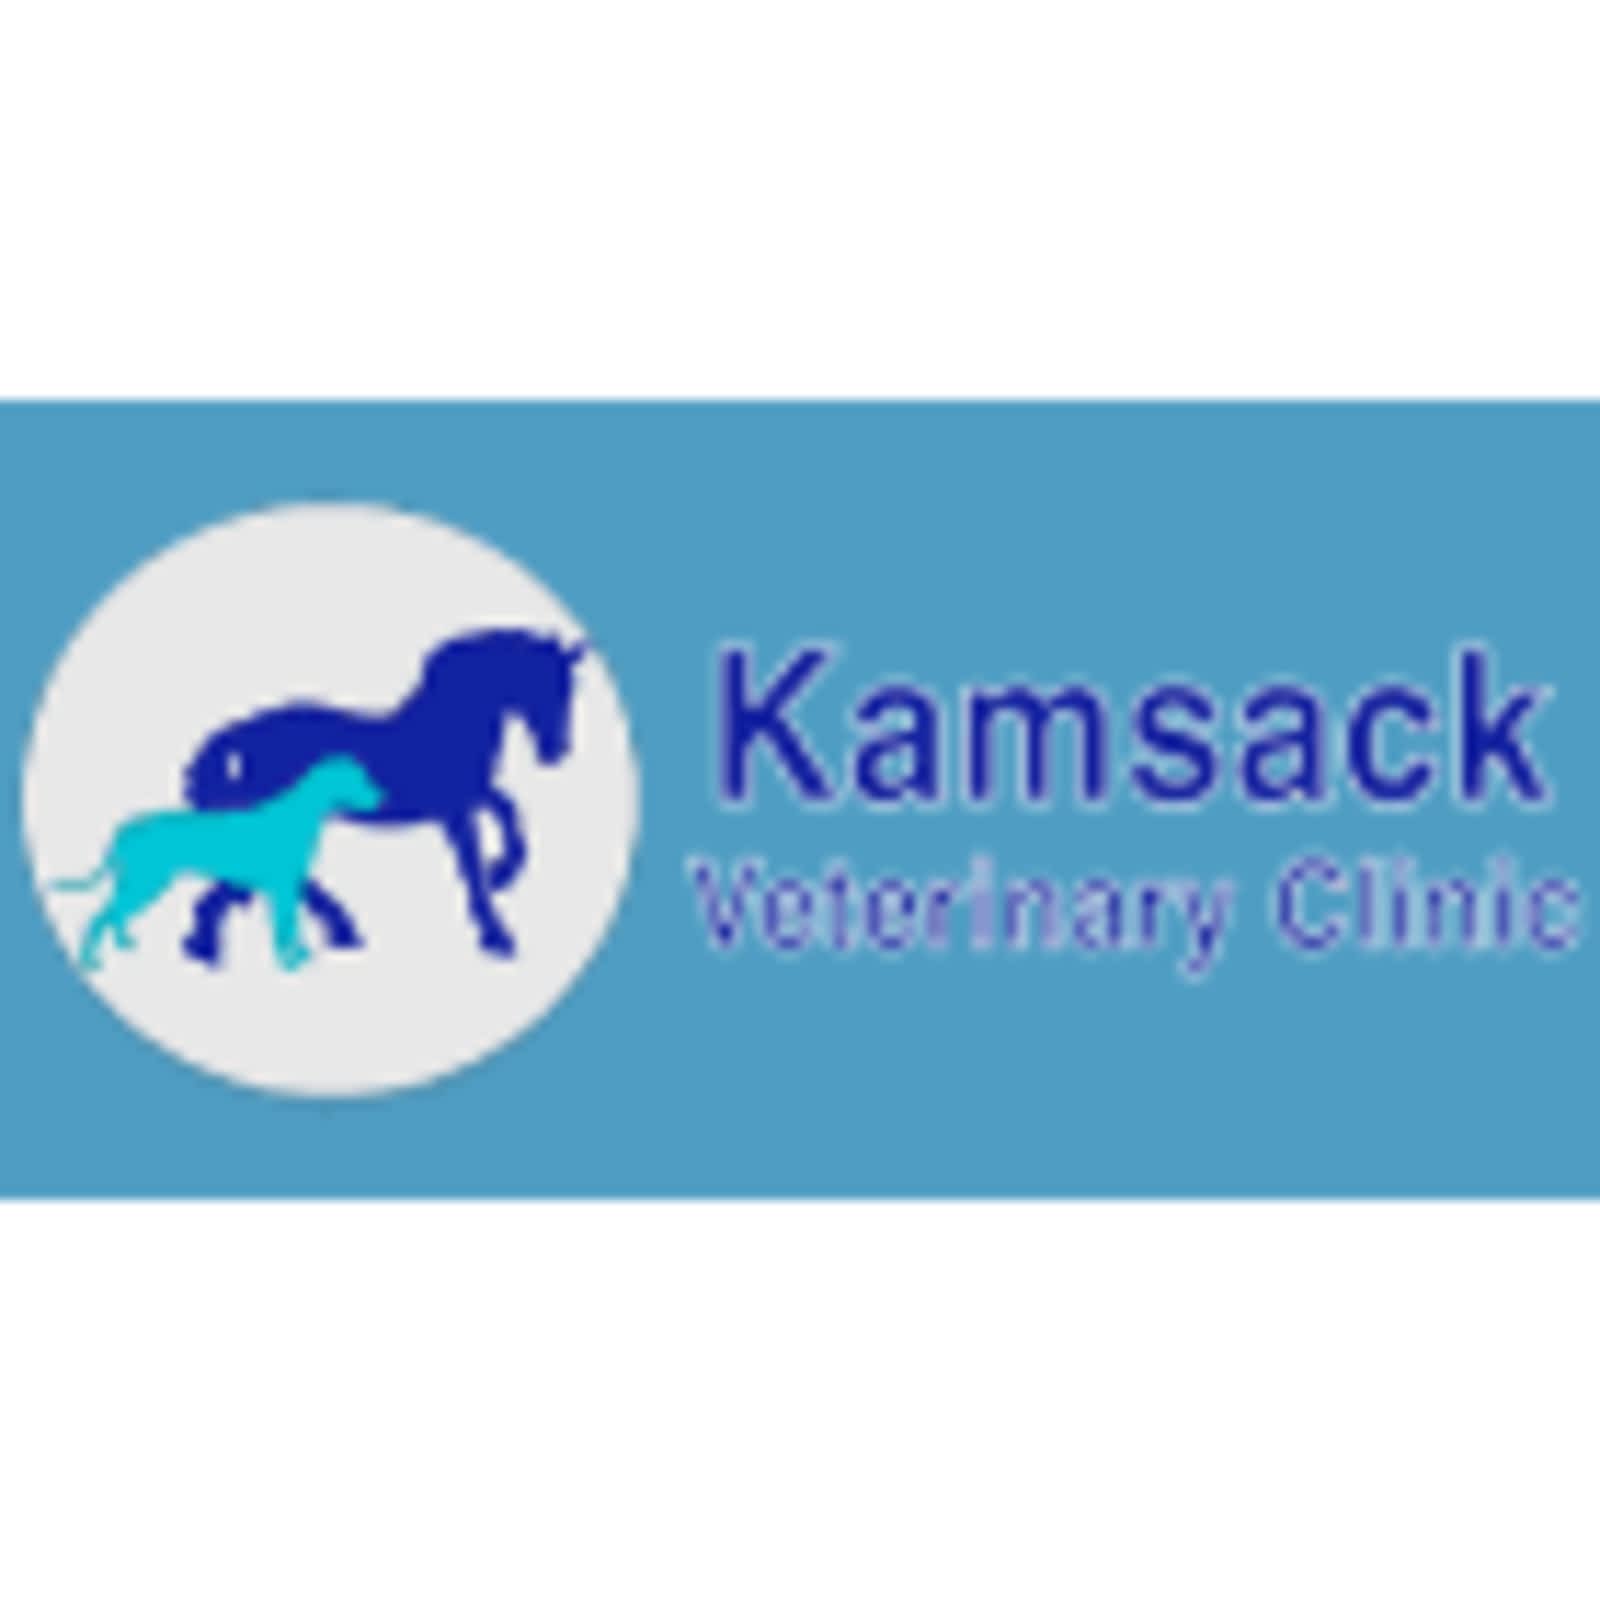 Kamsack Veterinary Clinic 241 2nd St, Kamsack Saskatchewan S0A 1S0